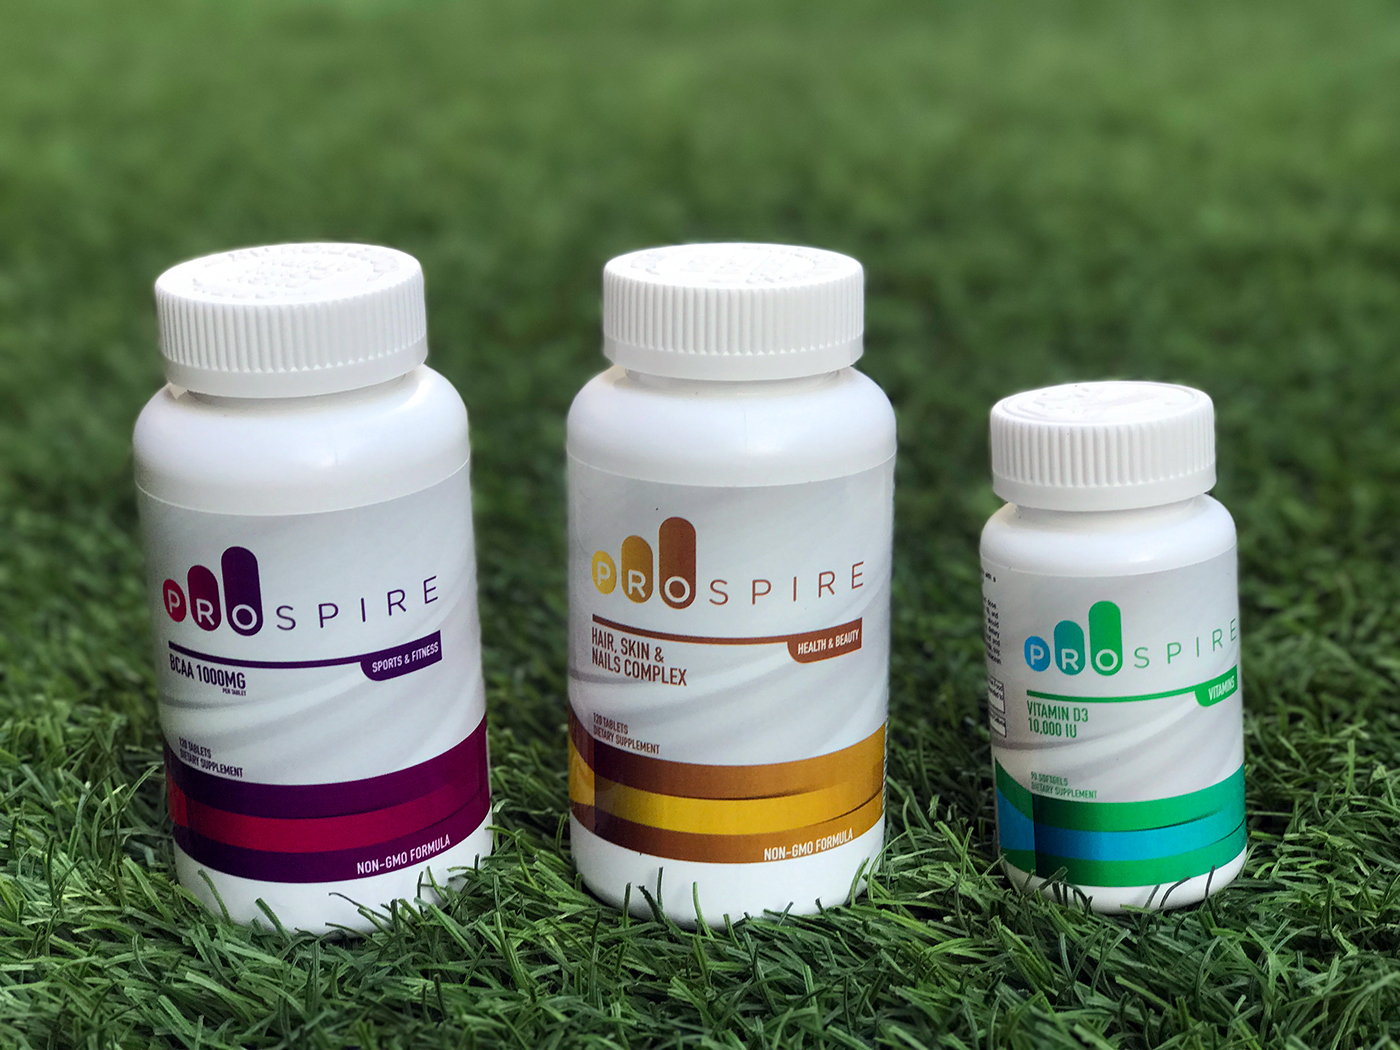 Prospire维生素营养补充剂平品牌全案设计-包装设计